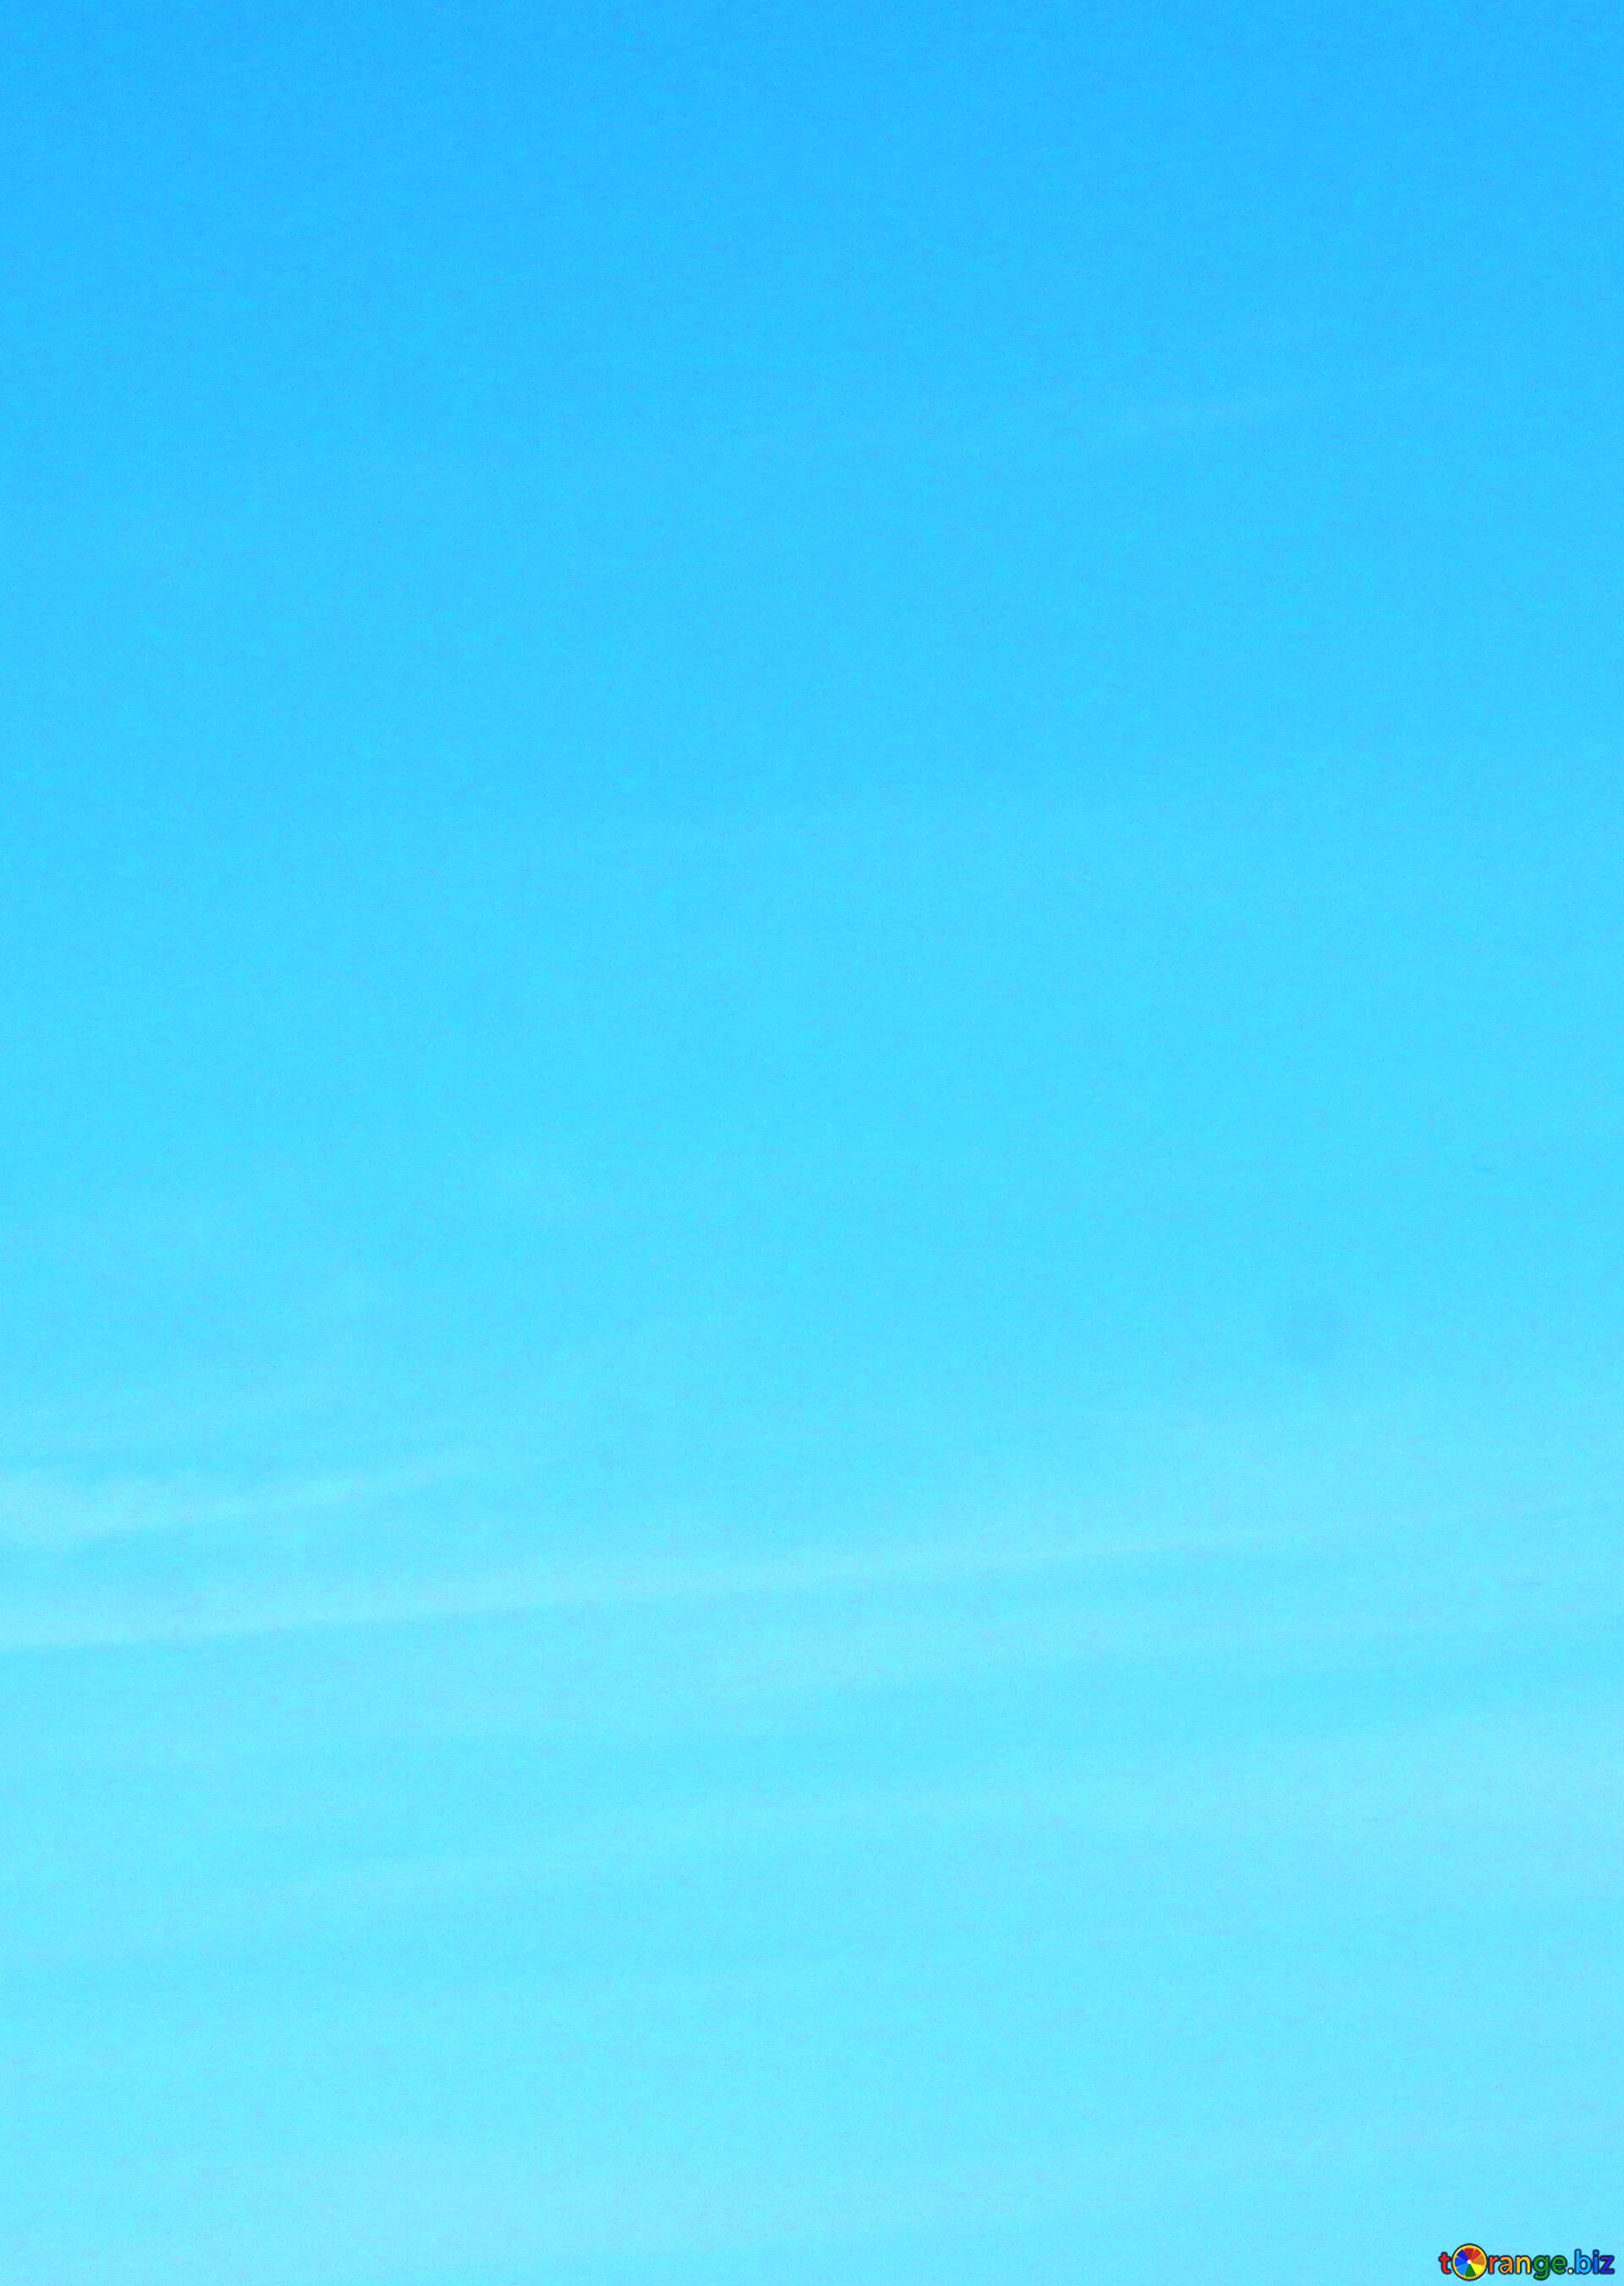 Những dải màu xanh trên nền trời trong veo, tạo thành một bức tranh hình nền đầy nhẹ nhàng và thanh thoát. Một bức ảnh về chất lượng nền của bầu trời xanh là điều không thể bỏ qua. Hãy tìm hiểu ngay để cảm nhận vẻ đẹp ấy.